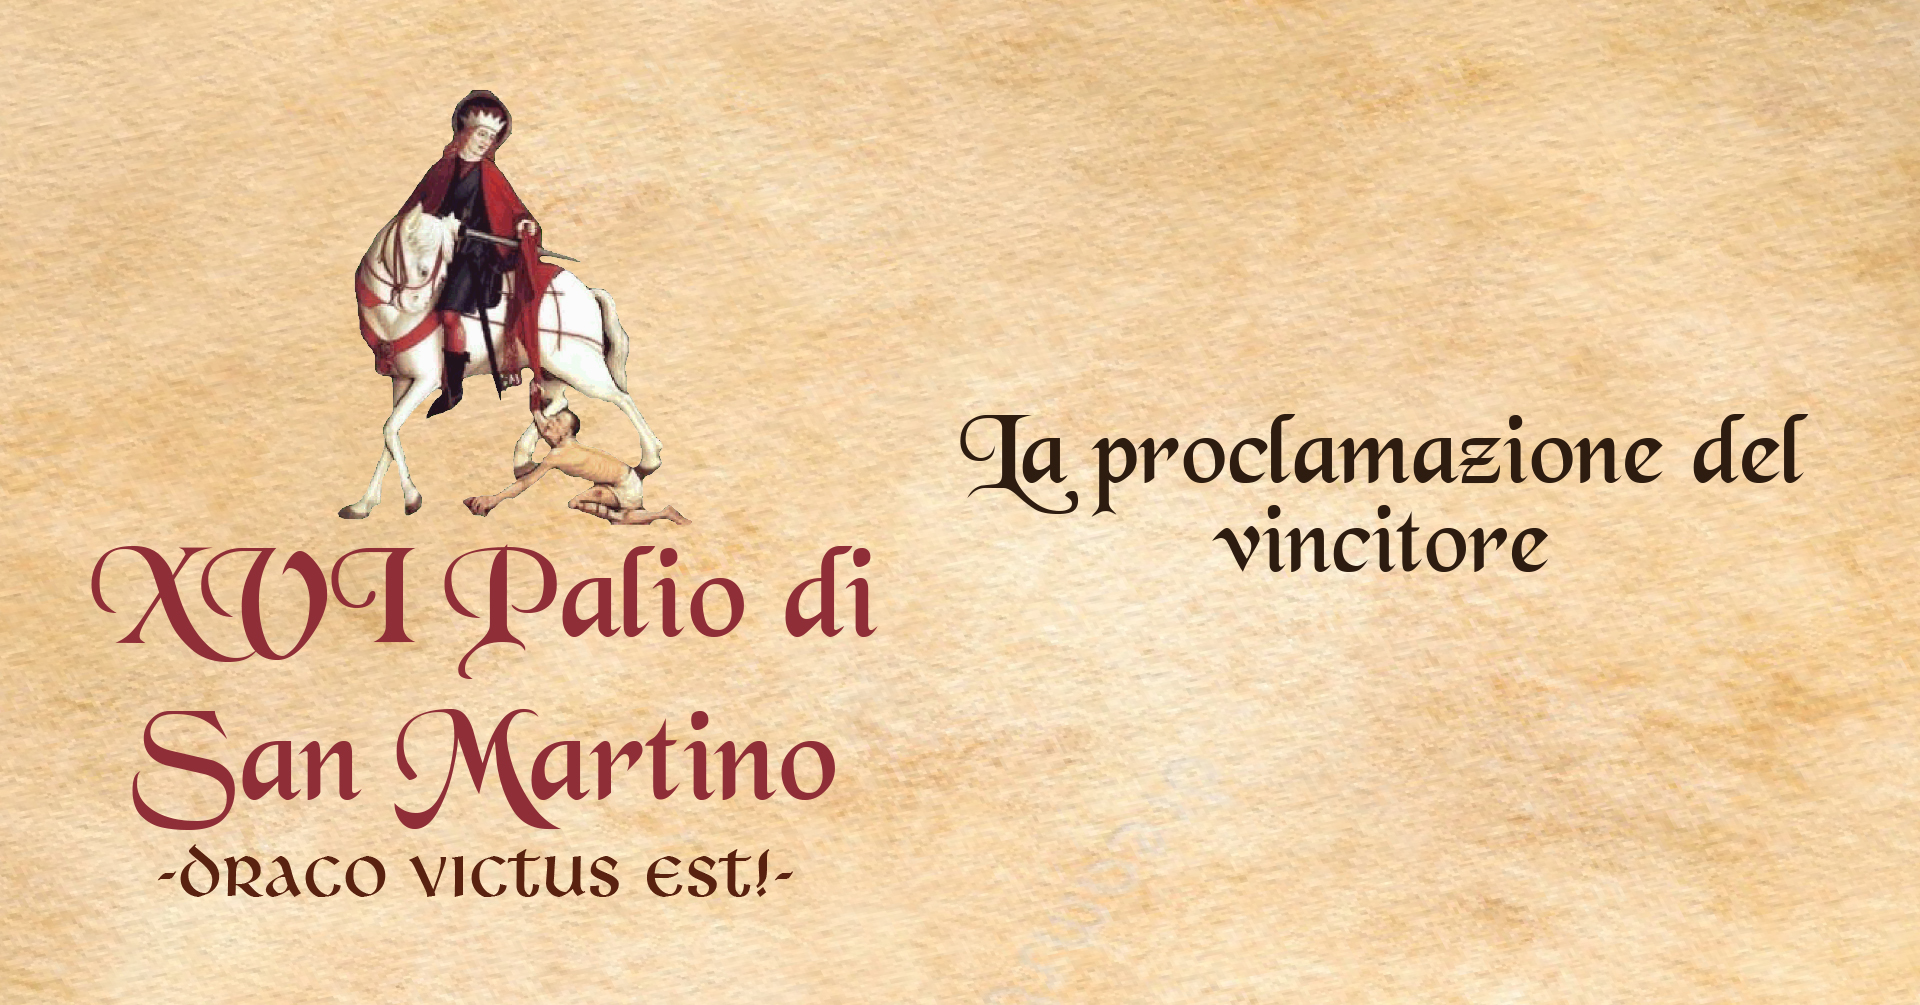 XVI° Palio di San Martino - La proclamazione dei vincitori